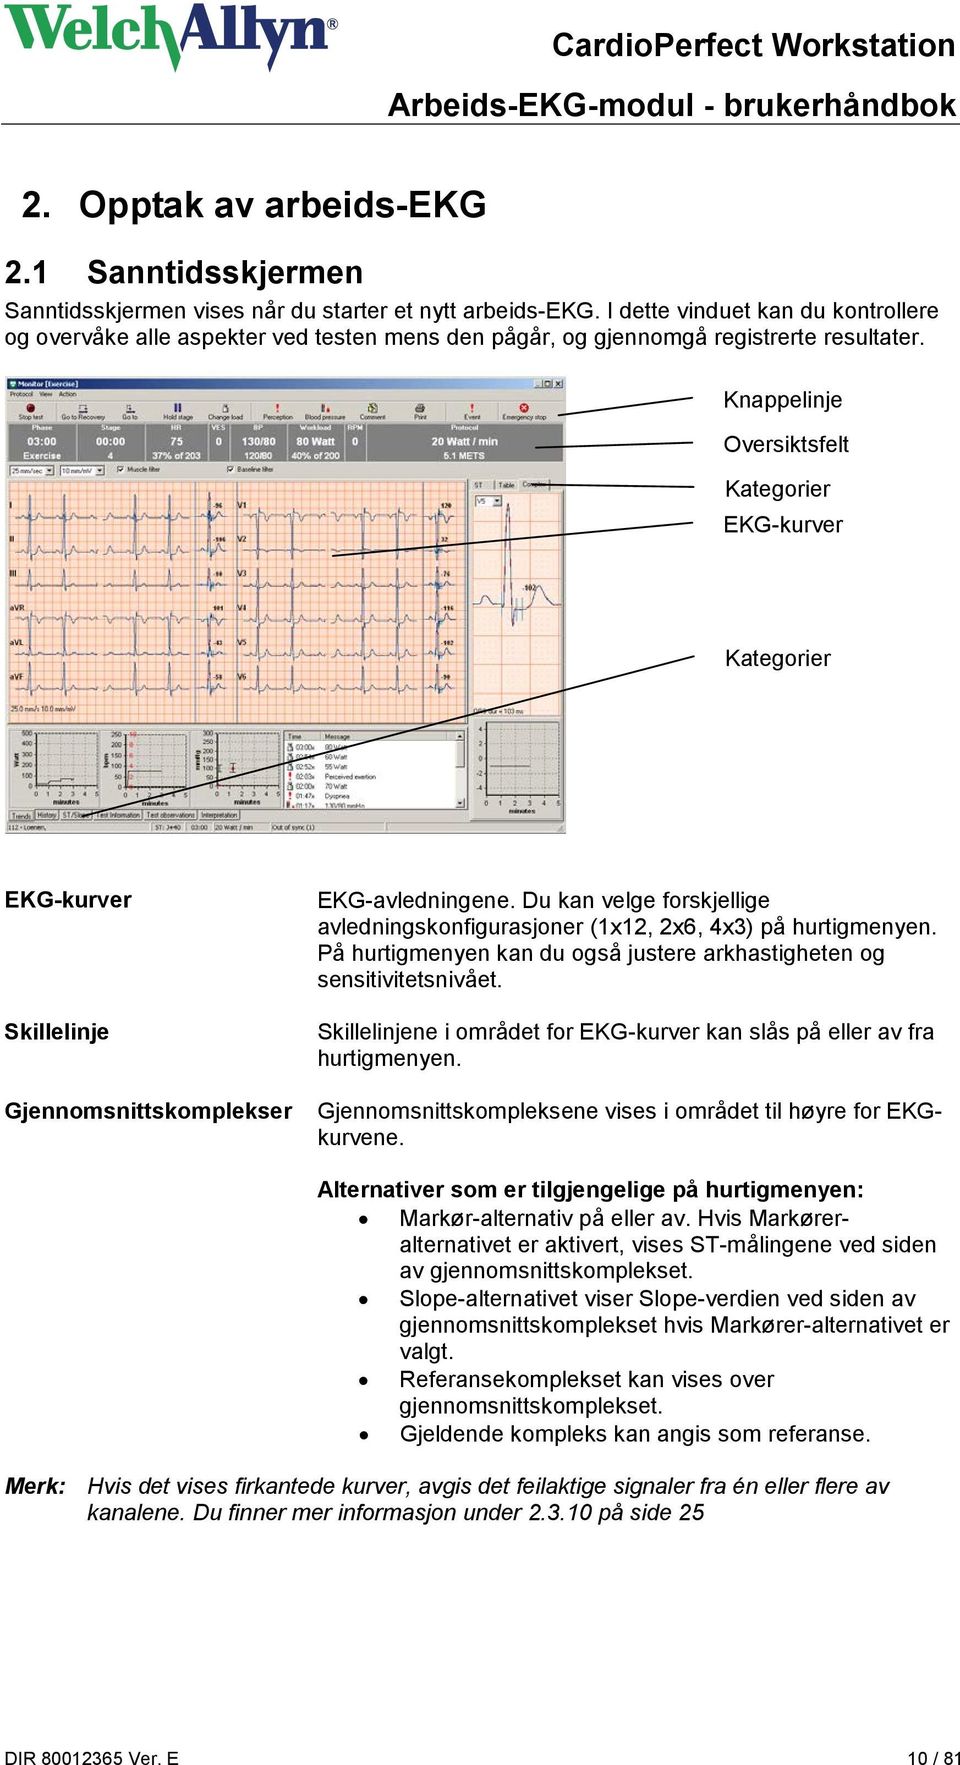 Knappelinje Oversiktsfelt Kategorier EKG-kurver Kategorier EKG-kurver Skillelinje Gjennomsnittskomplekser EKG-avledningene.